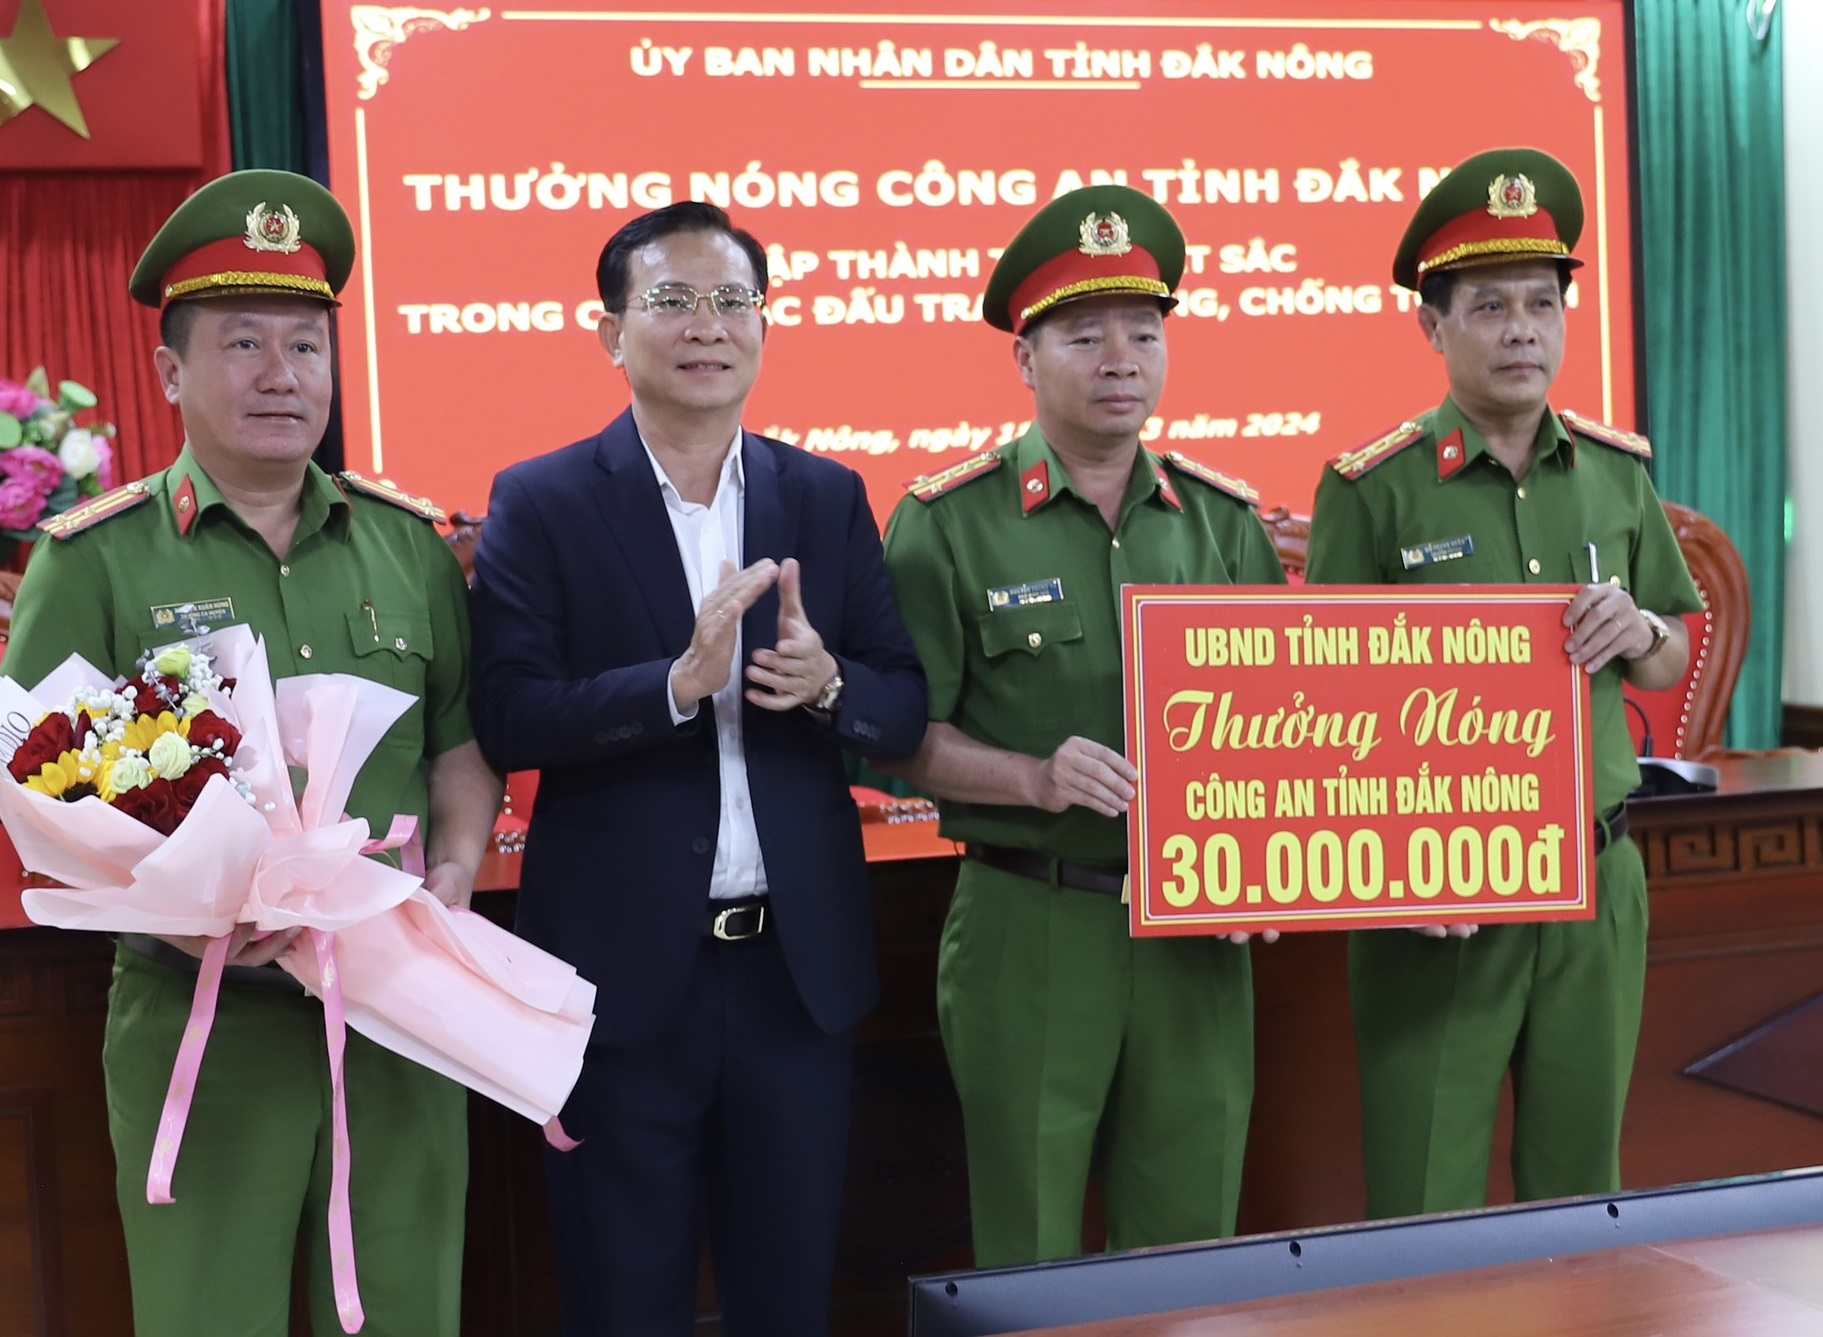 Chủ tịch UBND tỉnh Đắk Nông Hồ Văn Mười tặng hoa chúc mừng, trao thưởng nóng cho Công an tỉnh Đắk Nông